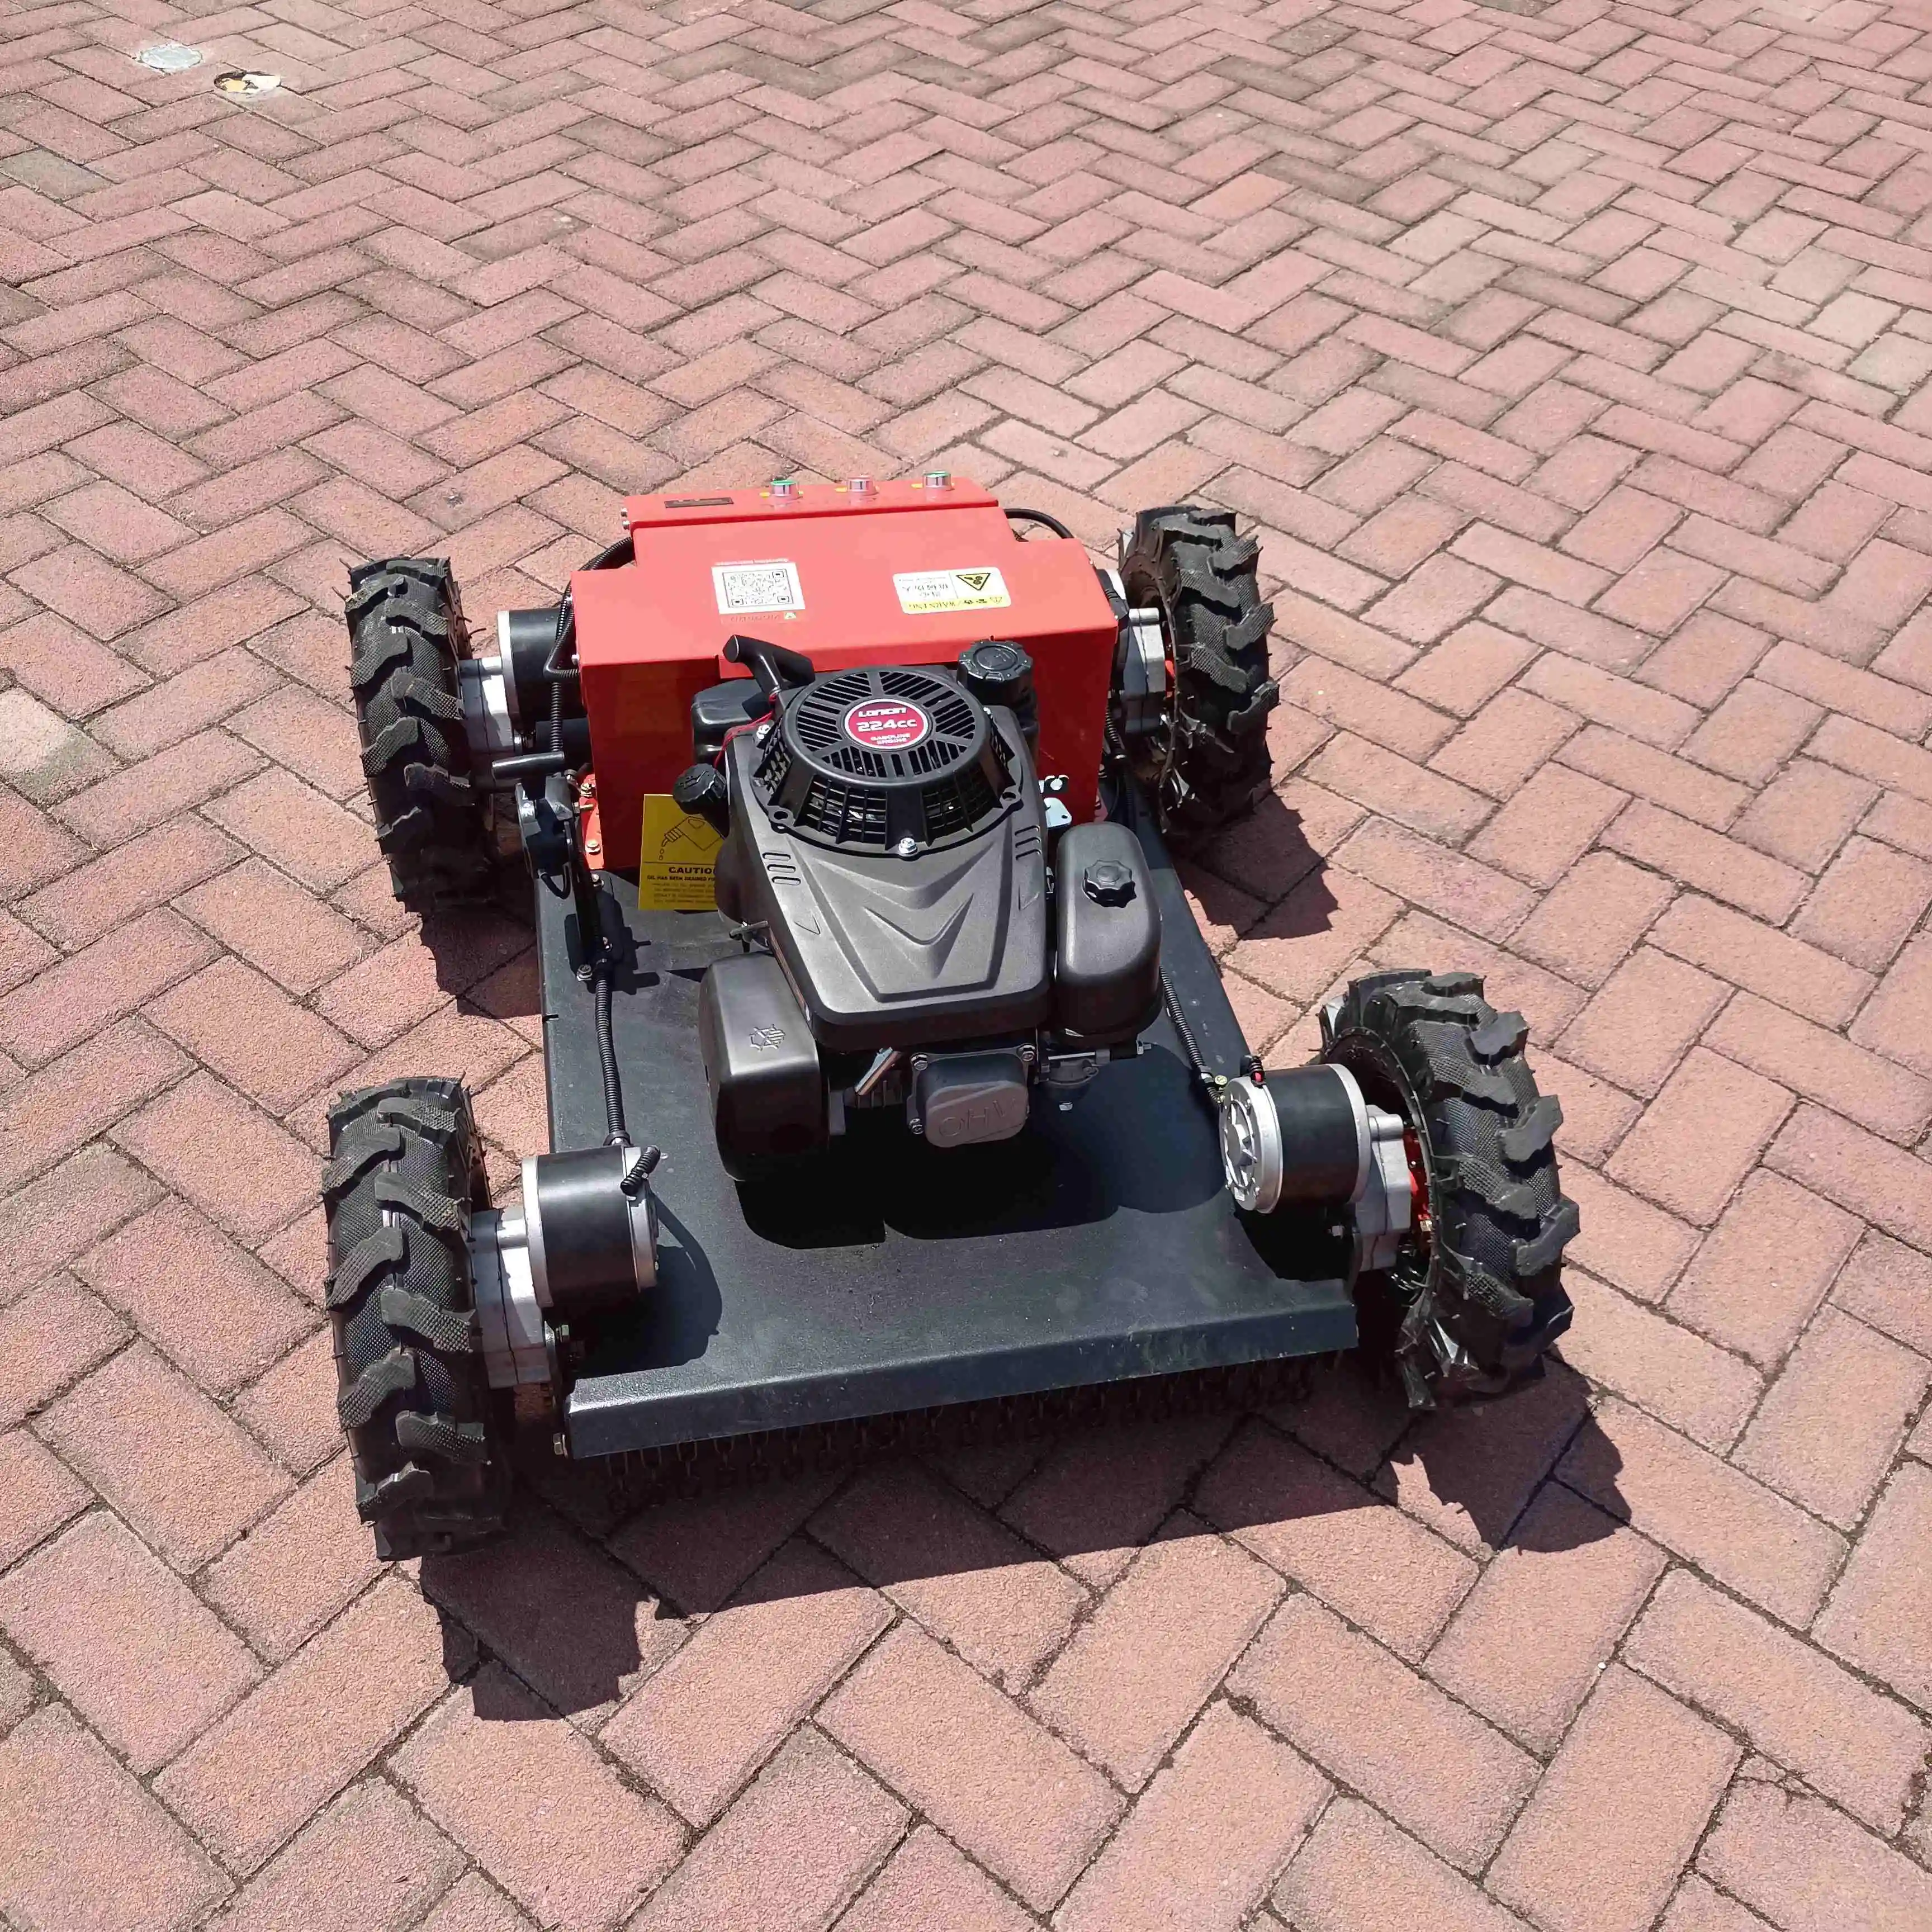 Joyance yeni Robot çim biçme makinesi 4 tekerlekler ile yüksek kaliteli benzin uzaktan kumanda Mini çim biçme makinesi